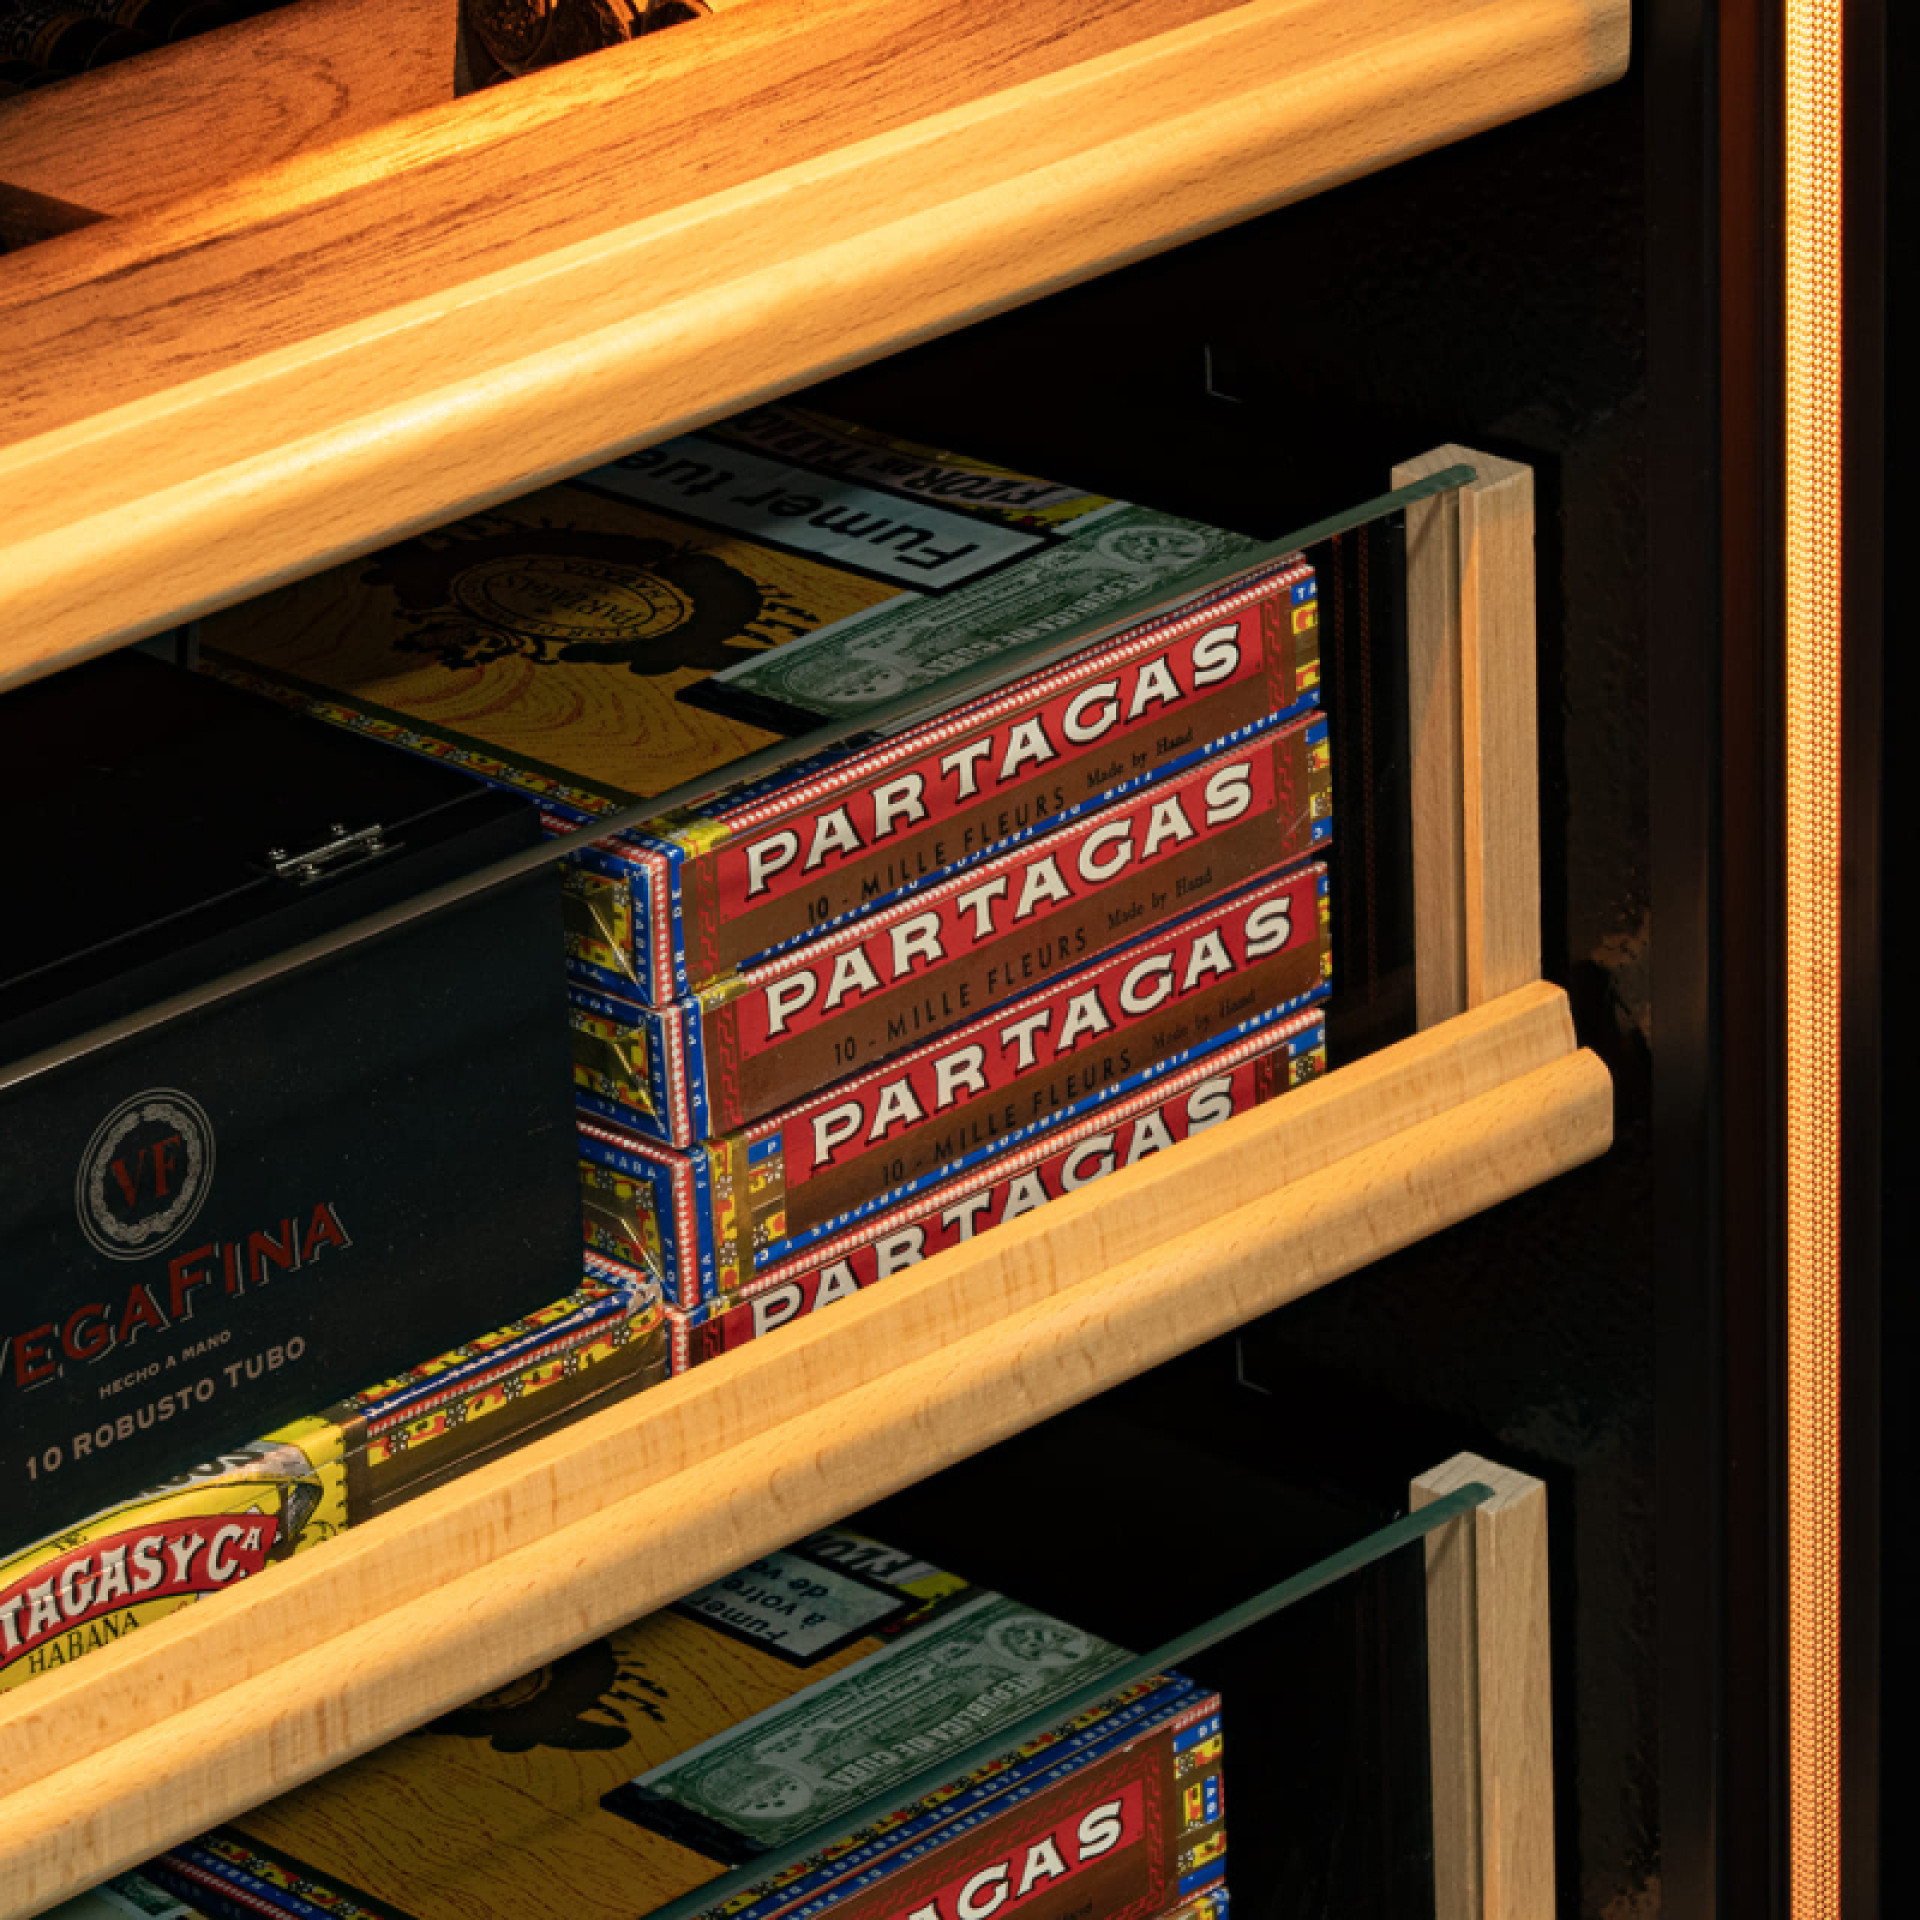 Clayette tiroir coulissante grande capacité de stockage pour ranger et stocker vos boites à cigares.